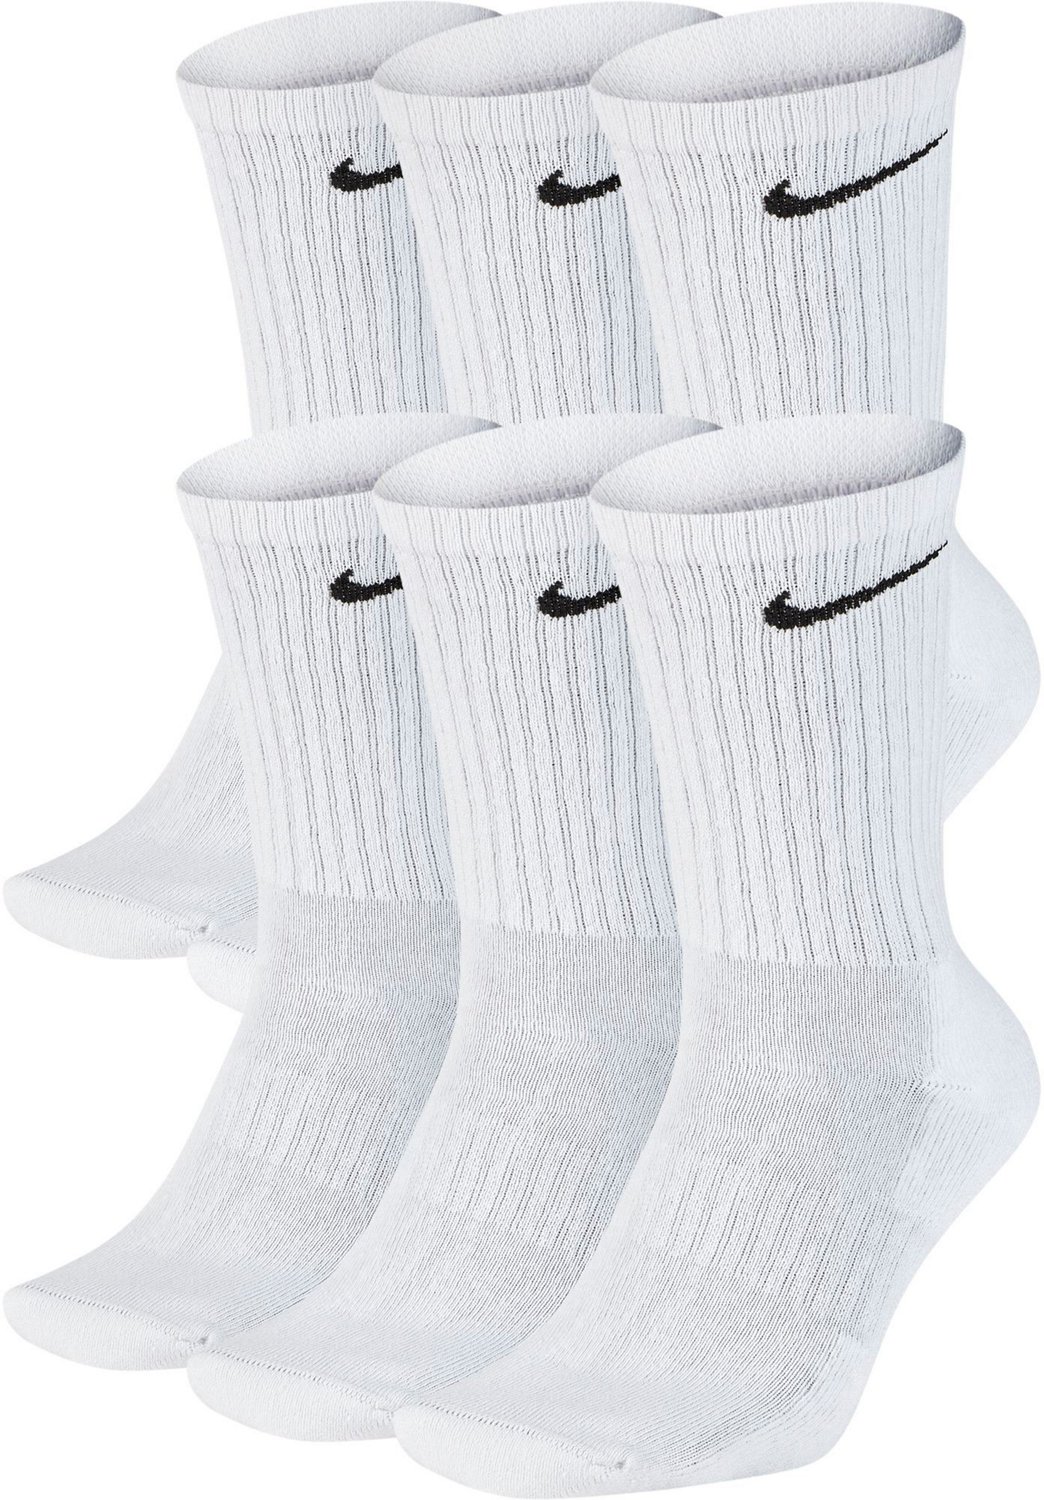 empieza la acción Movimiento alma Nike Men's Dri-FIT Everyday Cushion Crew Socks 6-Pack | Academy